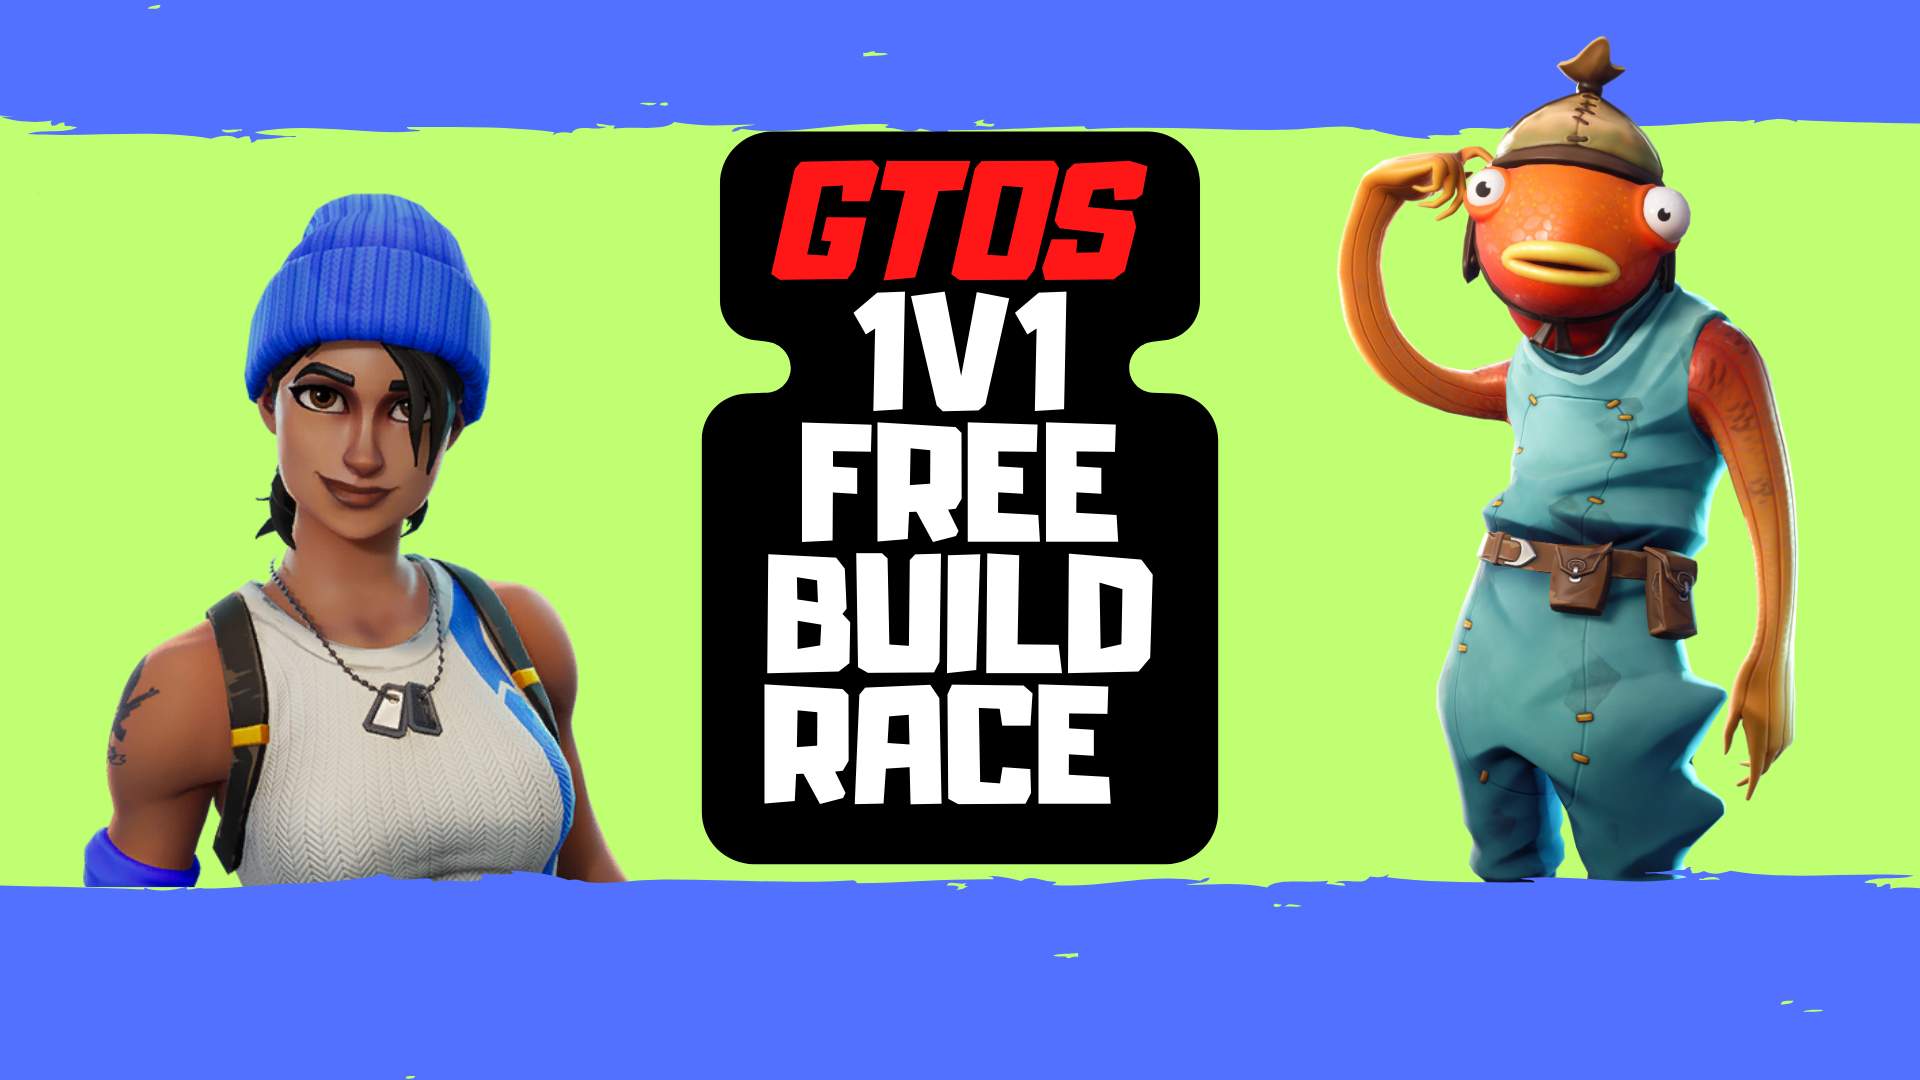 GTOS 1V1 FREE BUILD RACE